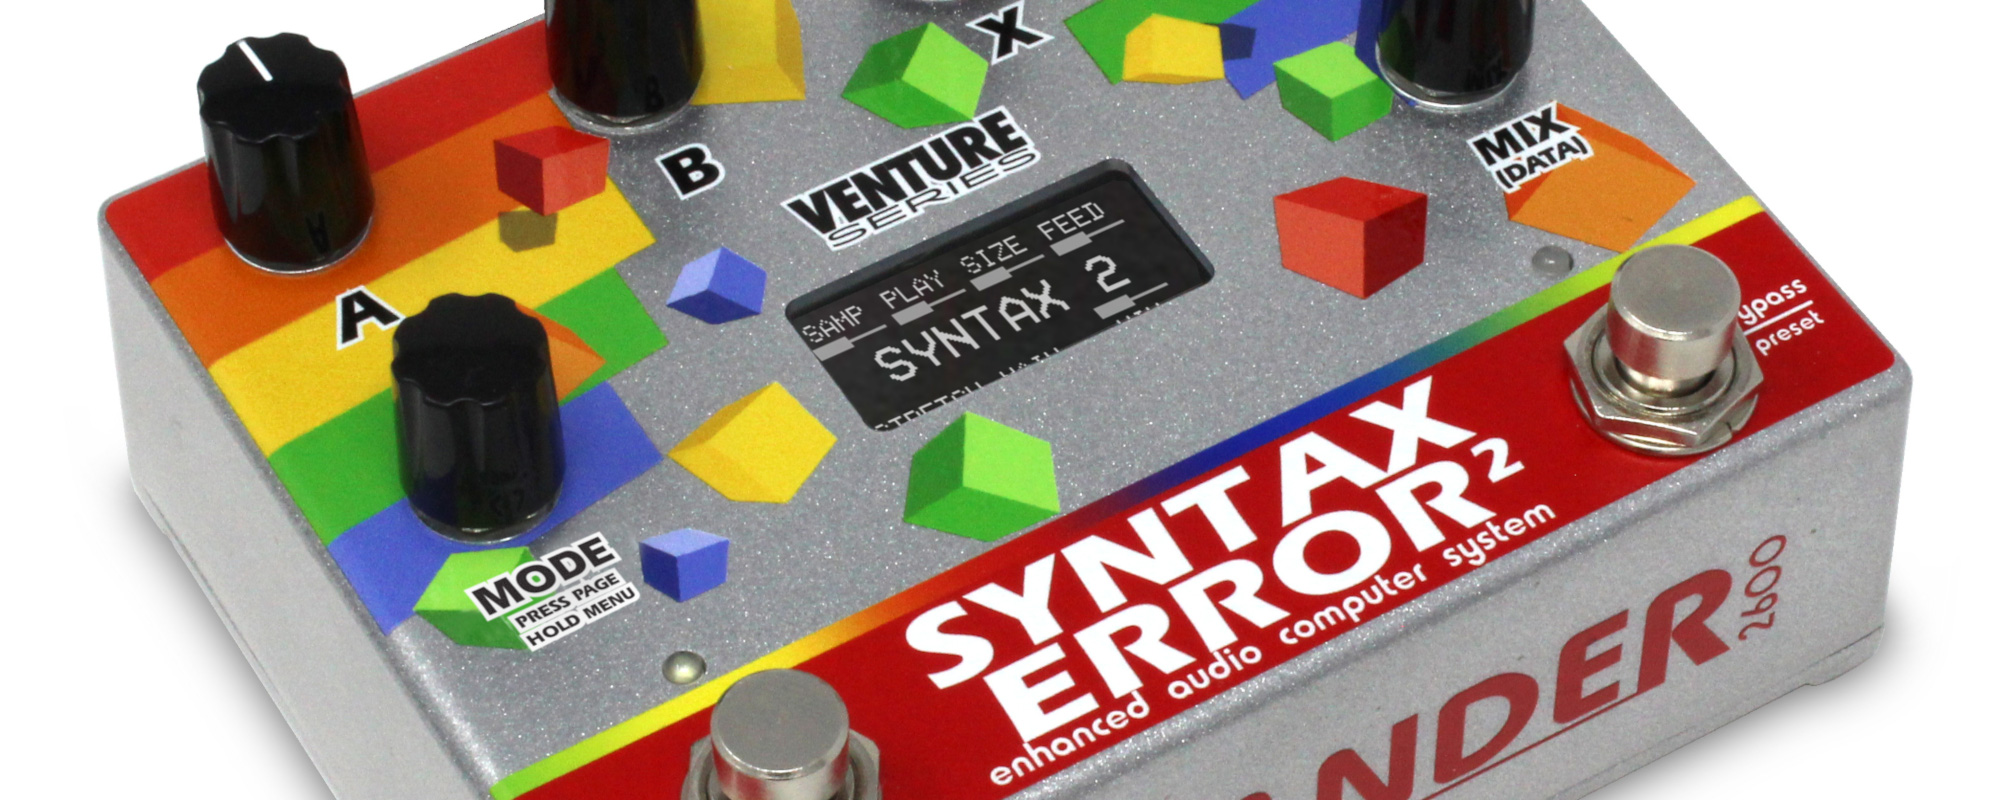 Gear Review: Alexander Pedals Syntax Error 2